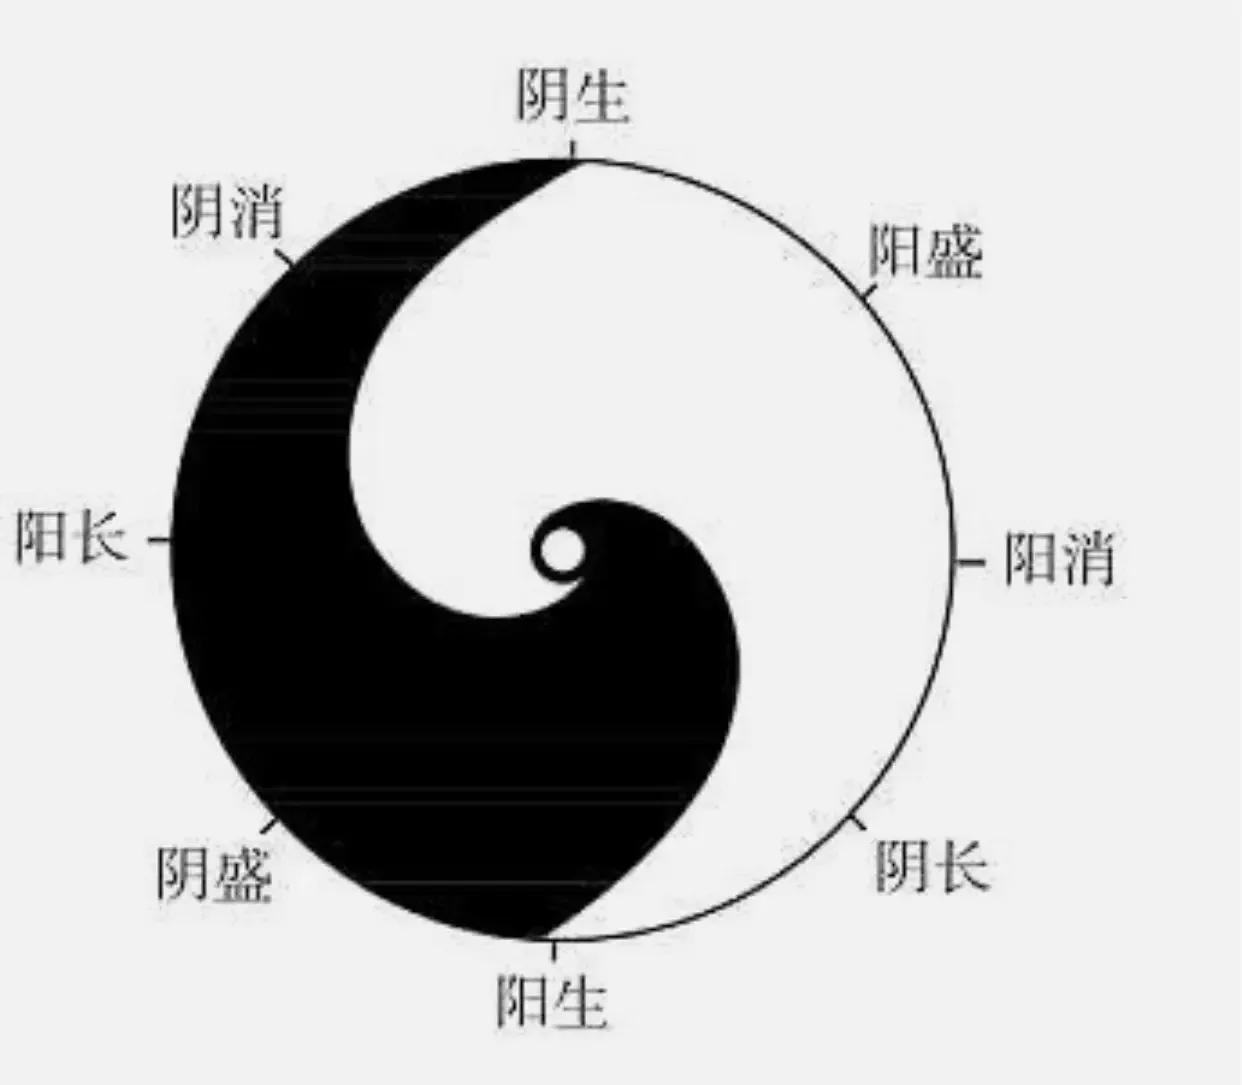 中国文化之阴阳哲学，太极图